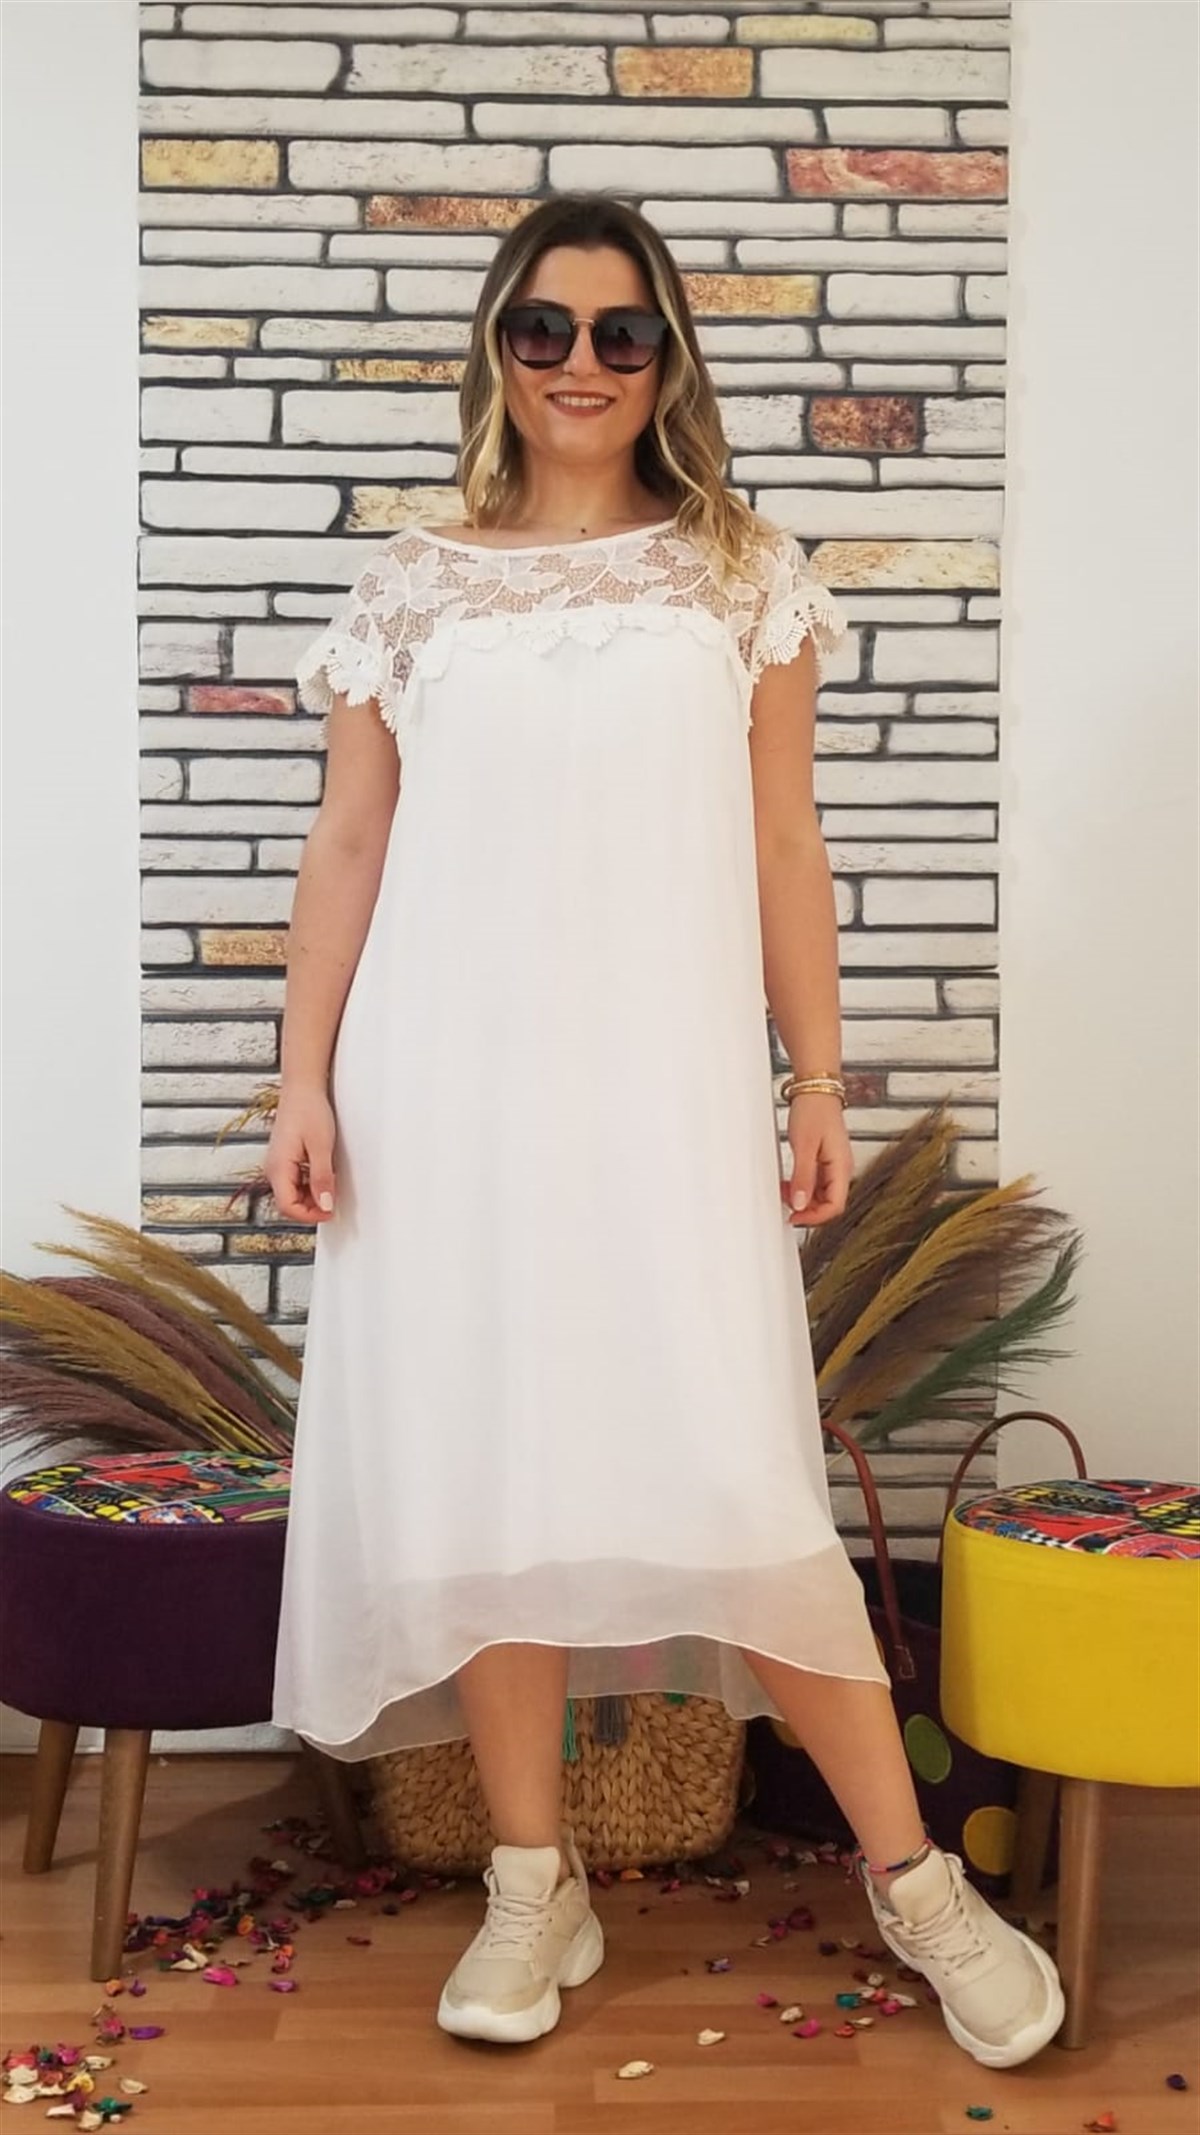 İtalyan beyaz İpek elbise astarlı oversize - Özel Dikim Elbise Modelleri  'da - 1114603642